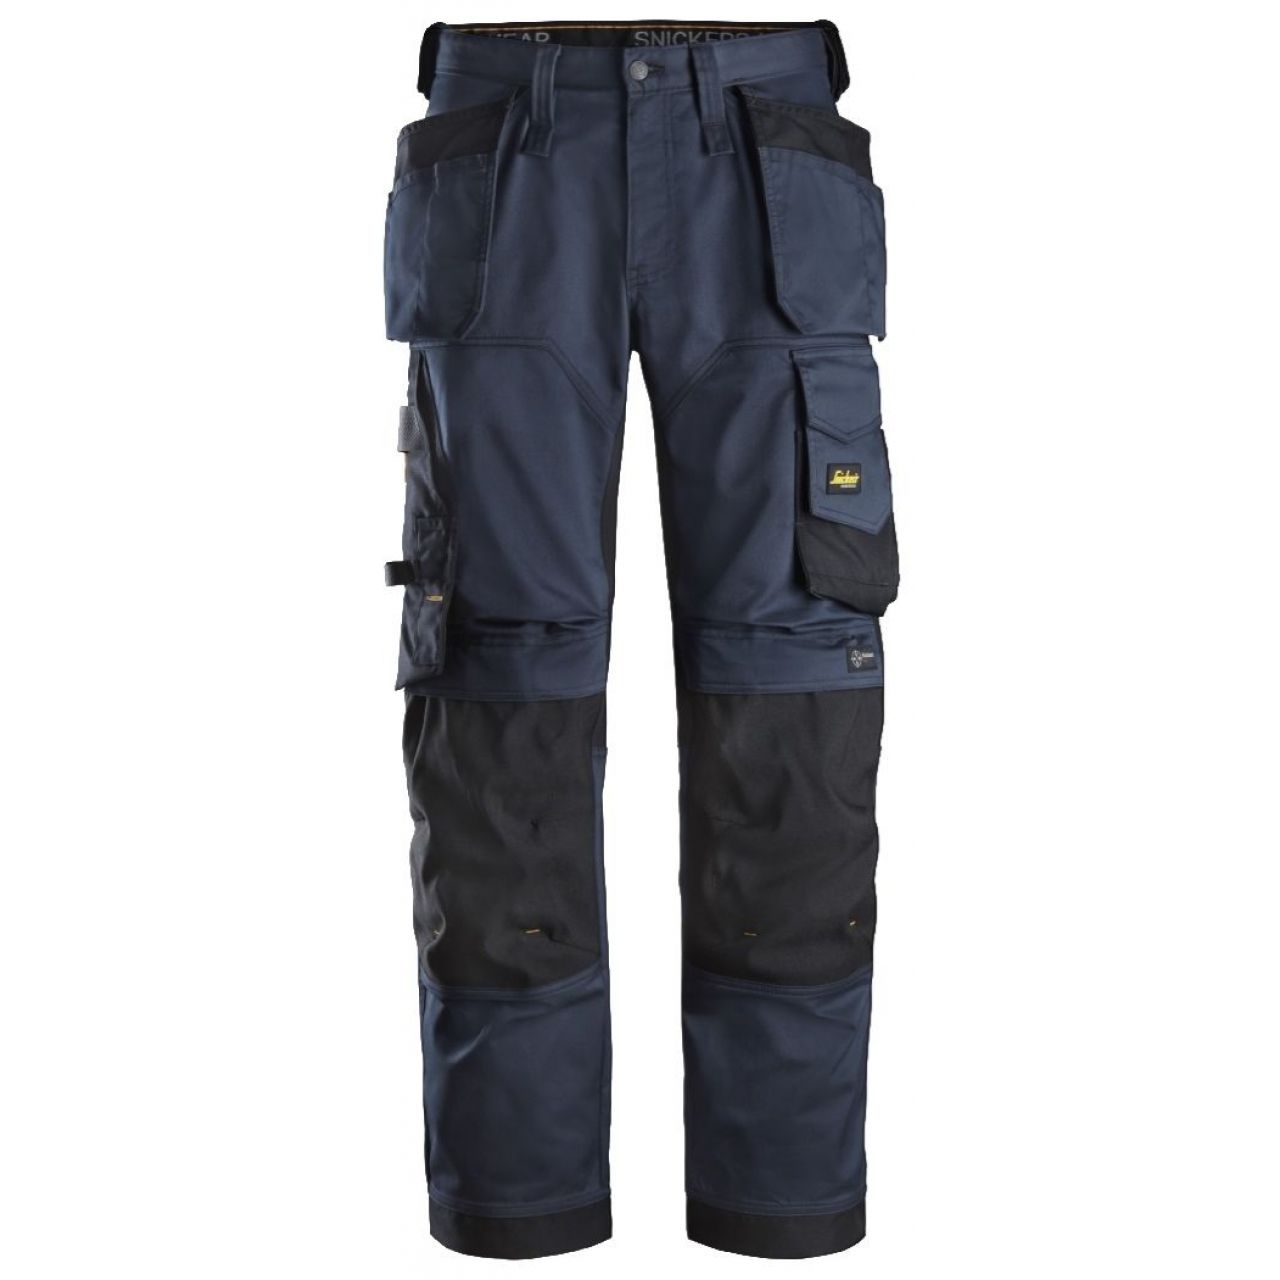 Pantalon elastico ajuste holgado AllroundWork bolsillos flotantes azul marino-negro talla 058